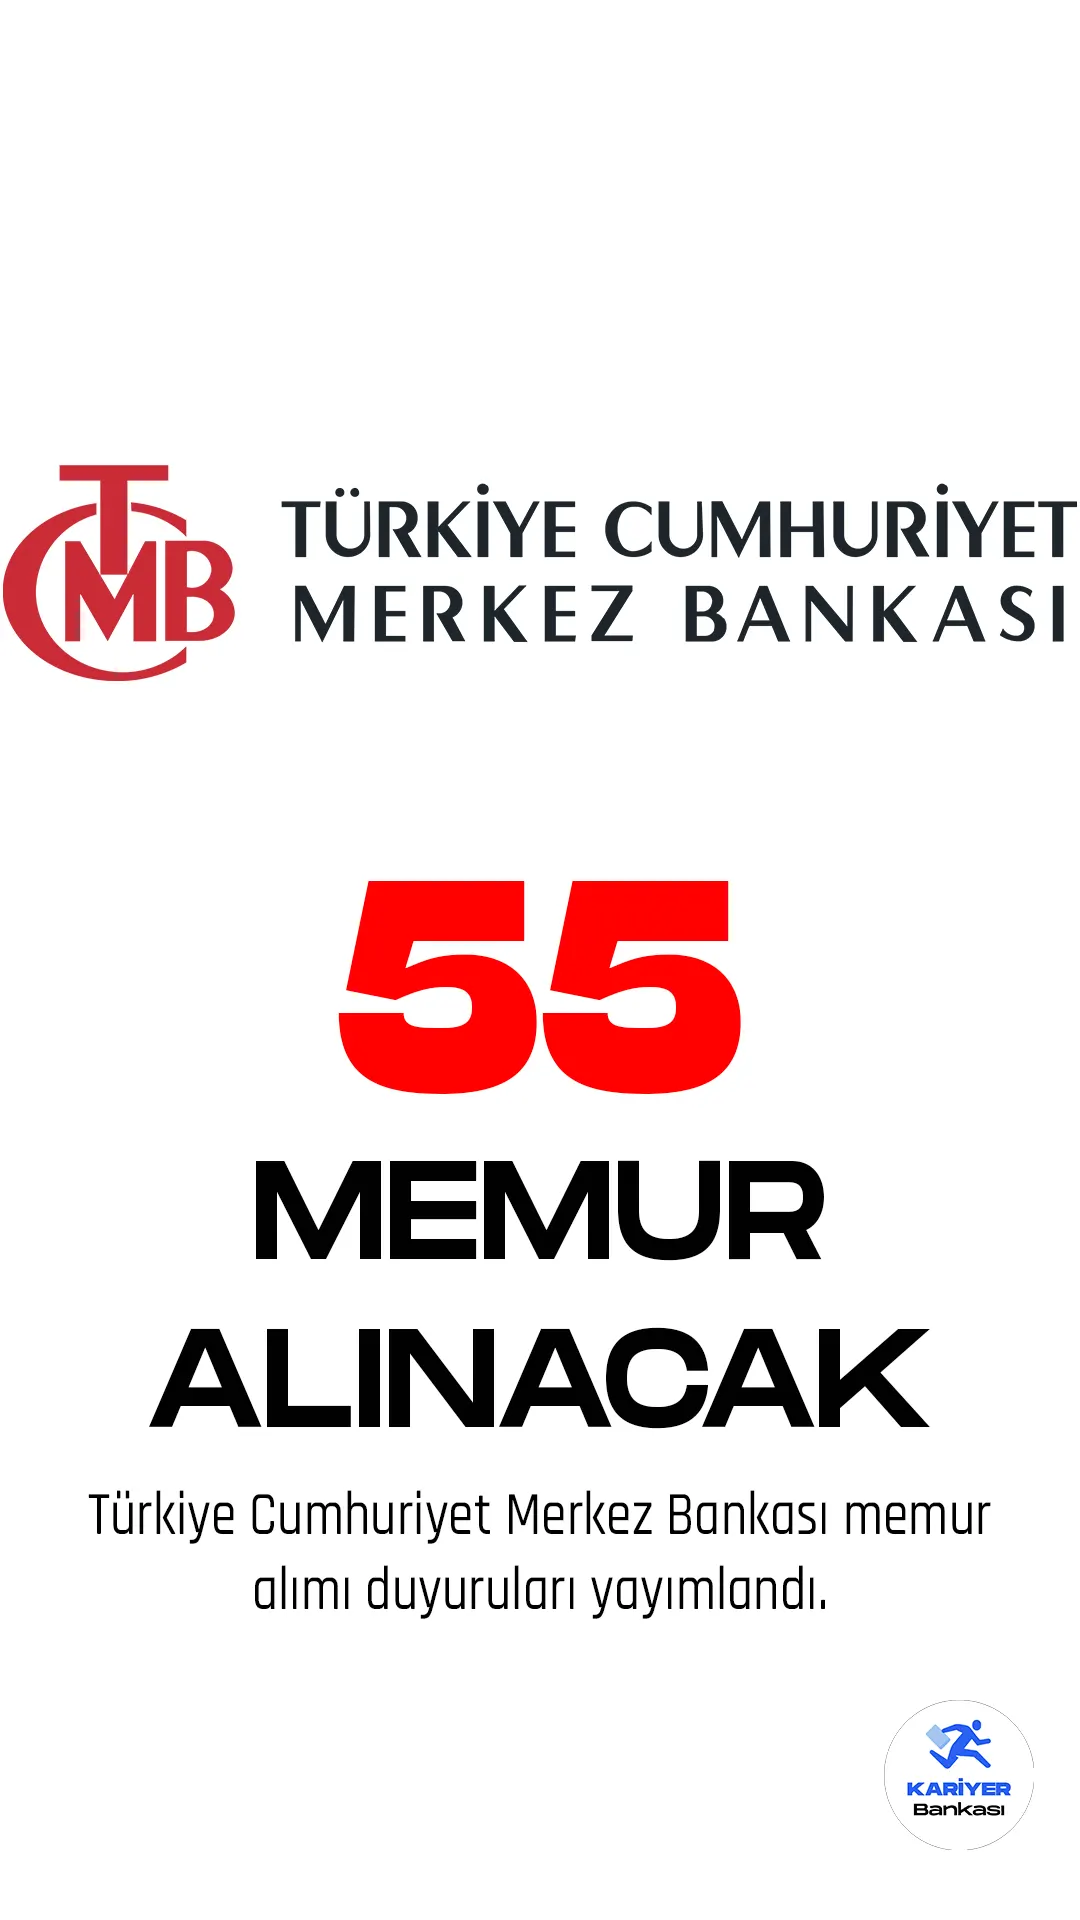 Türkiye Cumhuriyet Merkez Bankası memur alımı duyurusu yayımlandı.